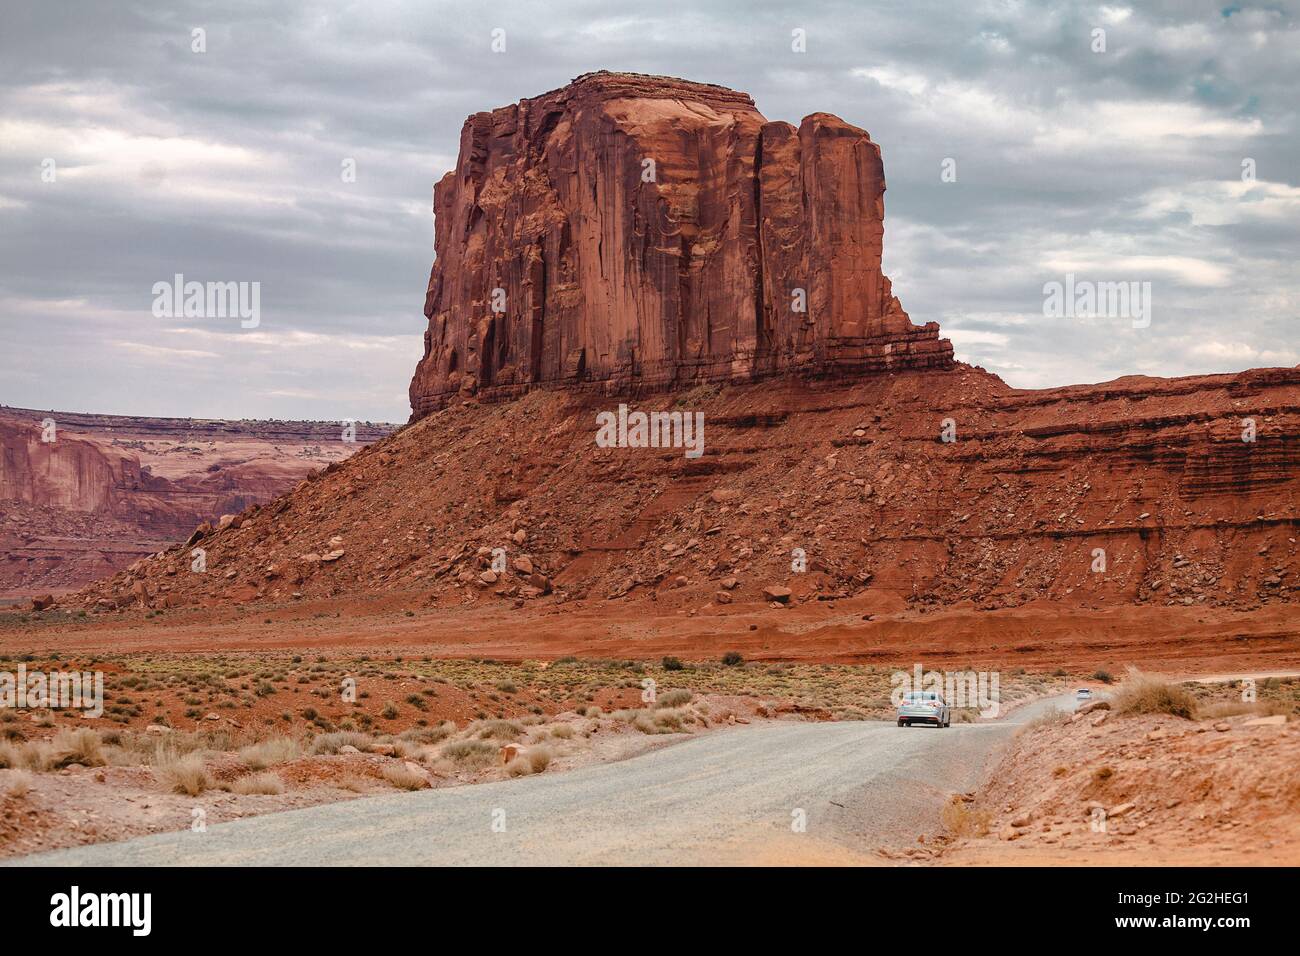 Die West Mitten Buttes (auch bekannt als die Fäustlinge) ist ein Butten im Monument Valley Navajo Tribal Park im Nordosten von Navajo County, Arizona, USA. Von Süden betrachtet, erscheinen die Buttes wie zwei riesige Fäustlinge, deren Daumen nach innen zeigen. Stockfoto